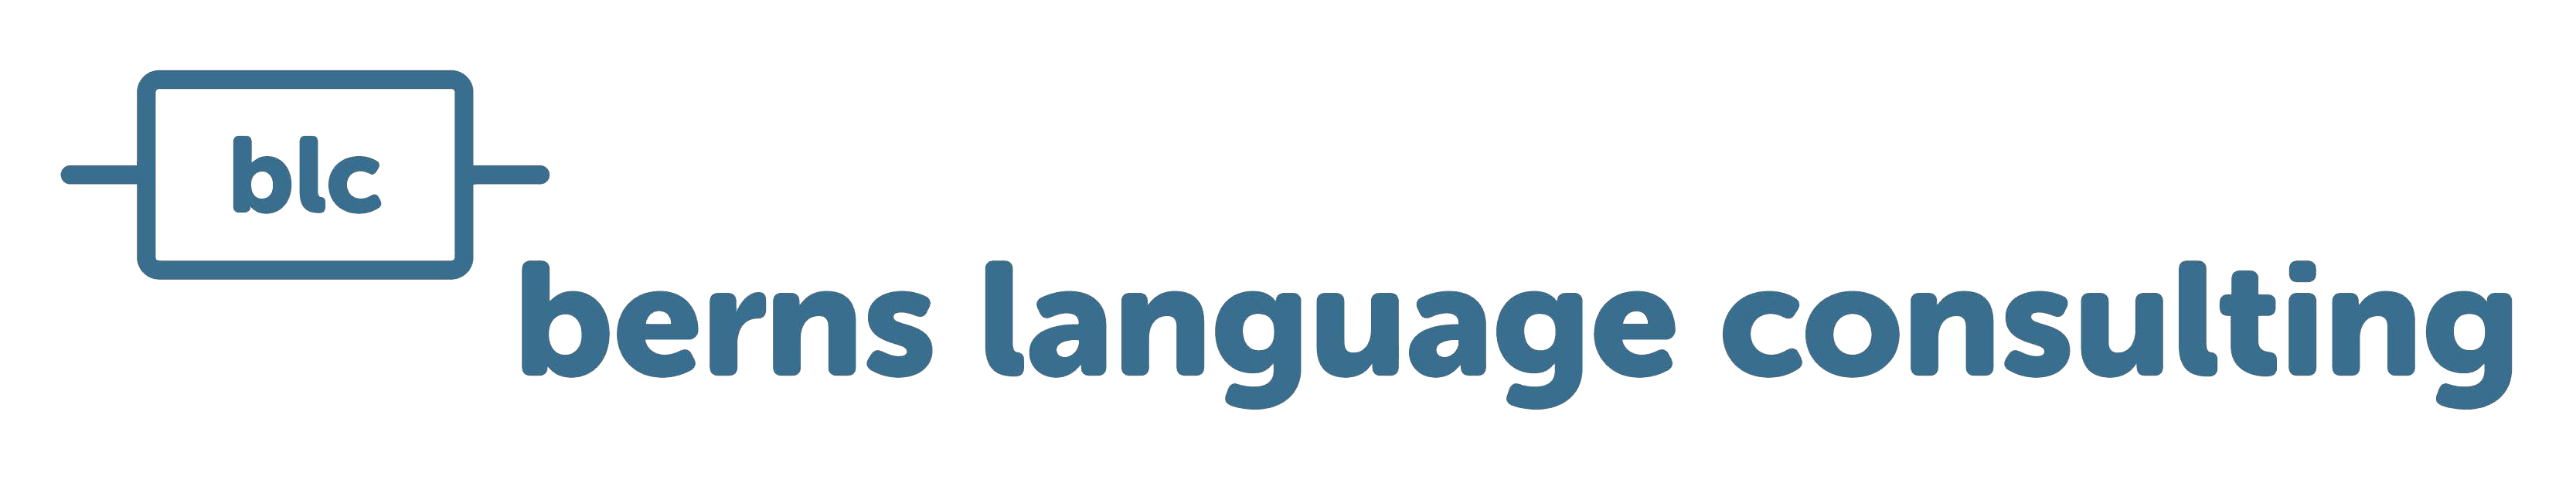 berns language consulting